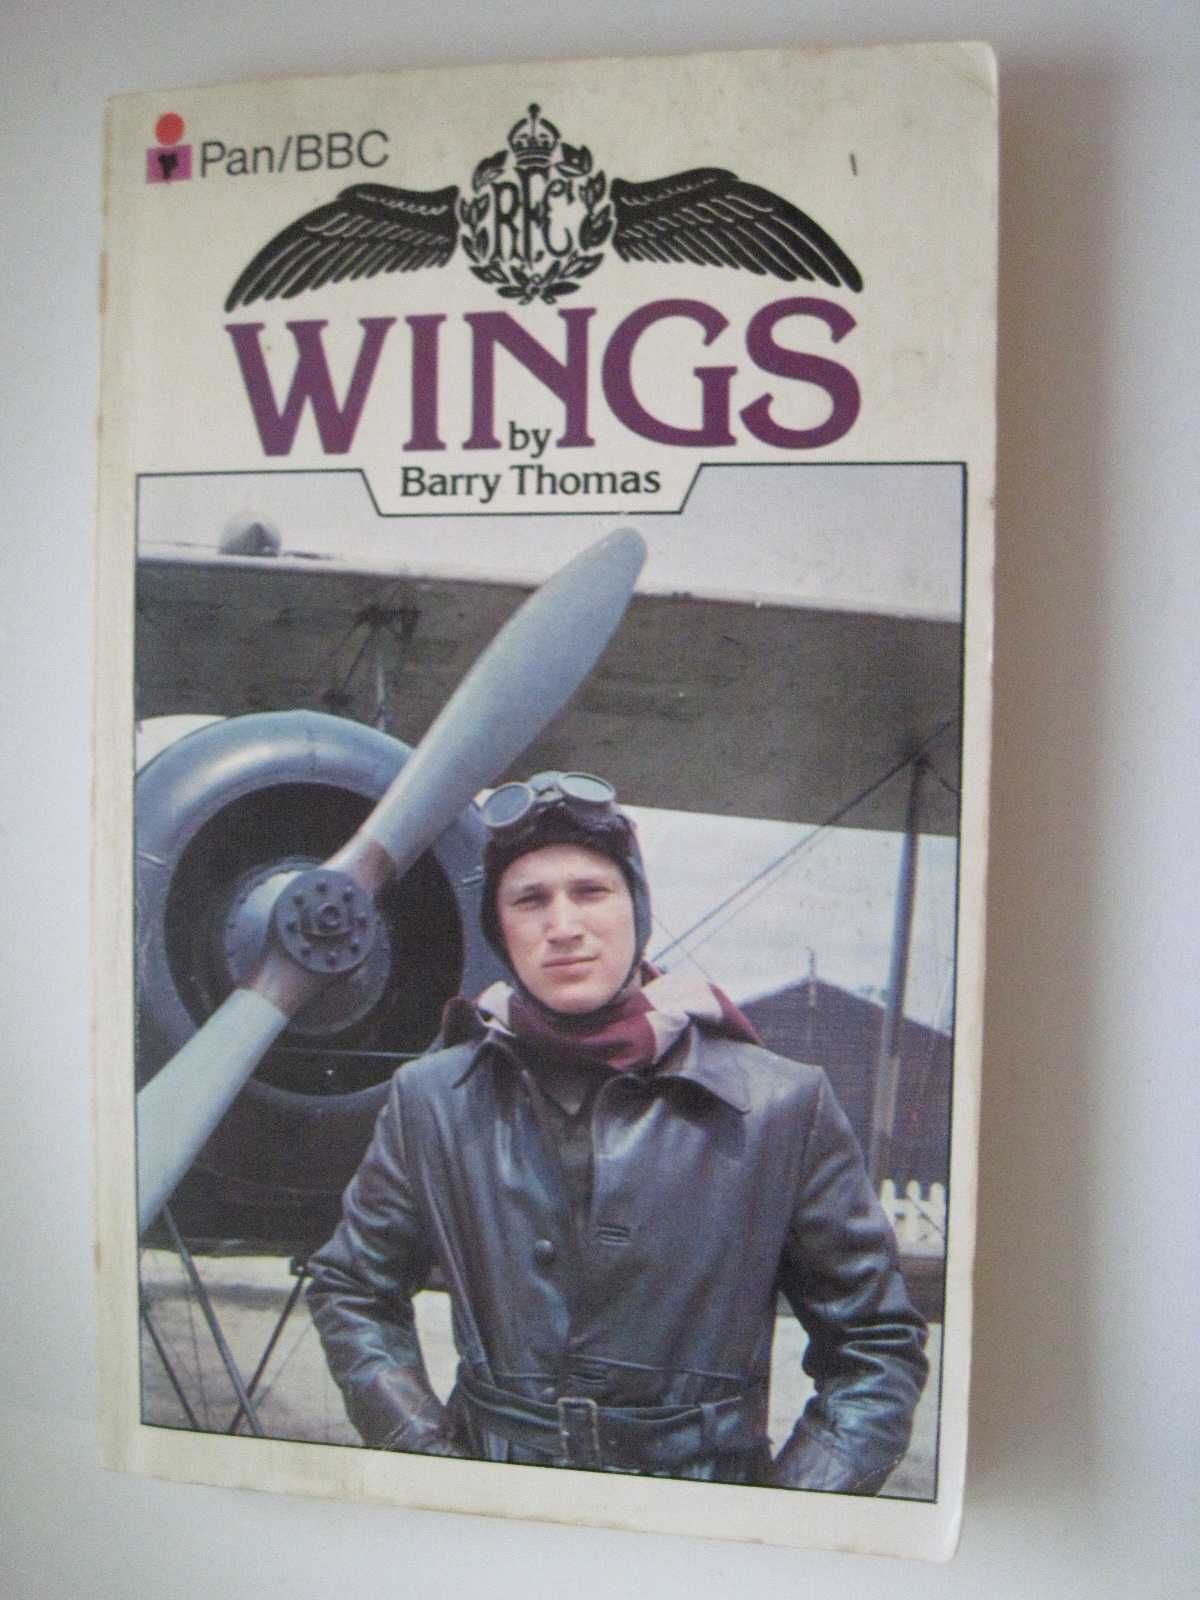 Książka po angielsku Barry Thomas - "Wings", nauka języka angielskiego